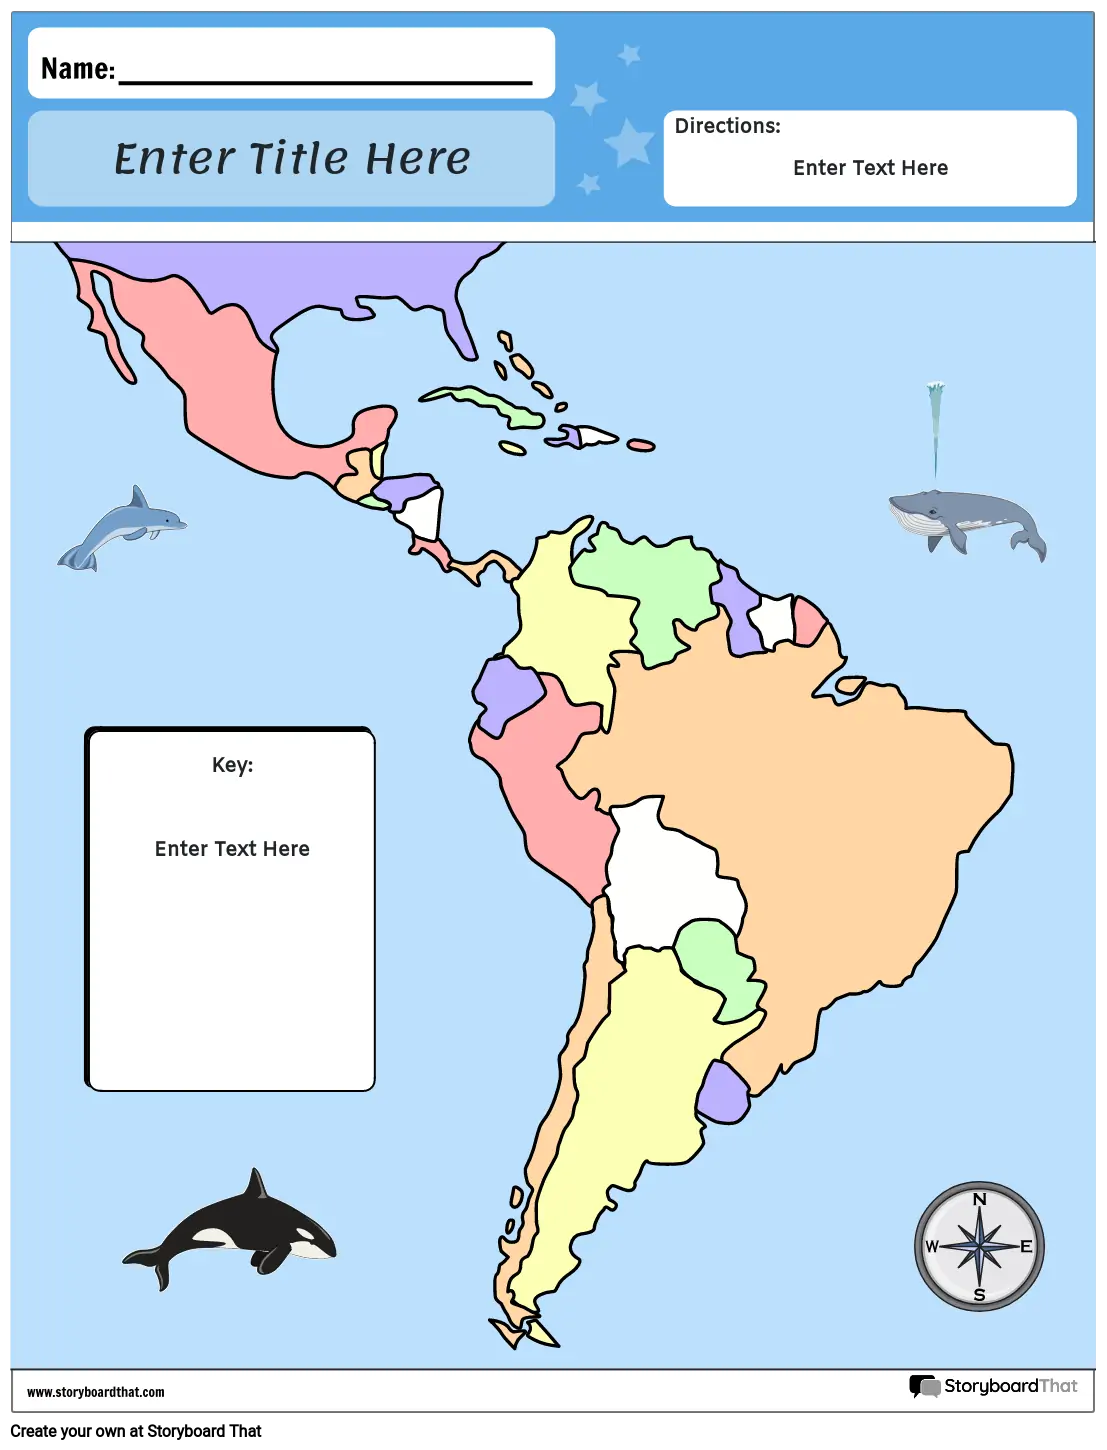 מפת דרום אמריקה